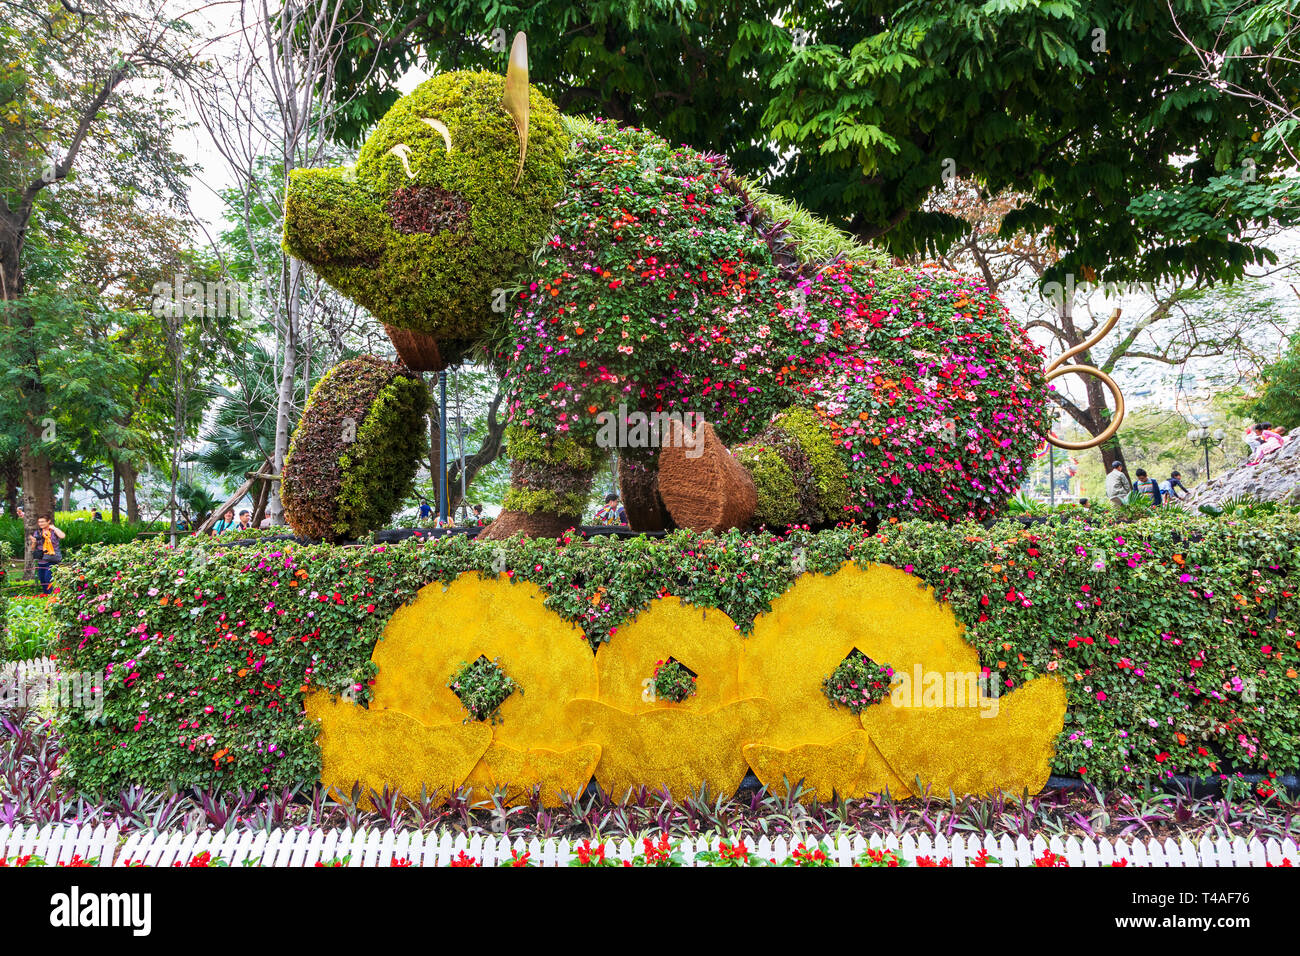 Statua di un suino come giardino decorazione per celebrare l anno del maiale in vietnamita Anno nuovo, il vecchio quartiere di Hanoi, Vietnam Asia Foto Stock